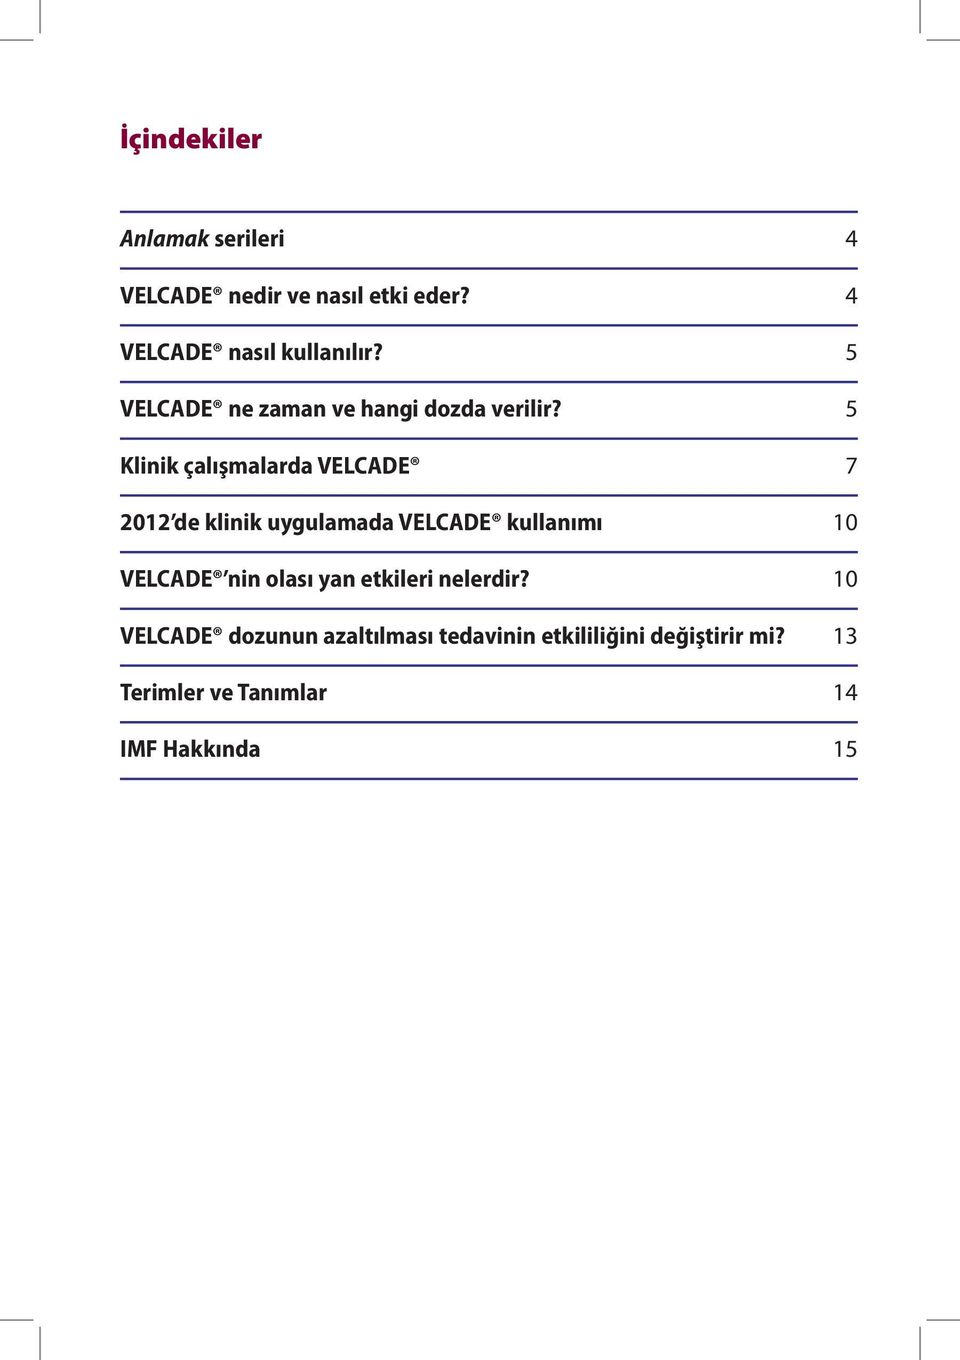 5 Klinik çalışmalarda VELCADE 7 2012 de klinik uygulamada VELCADE kullanımı 10 VELCADE nin